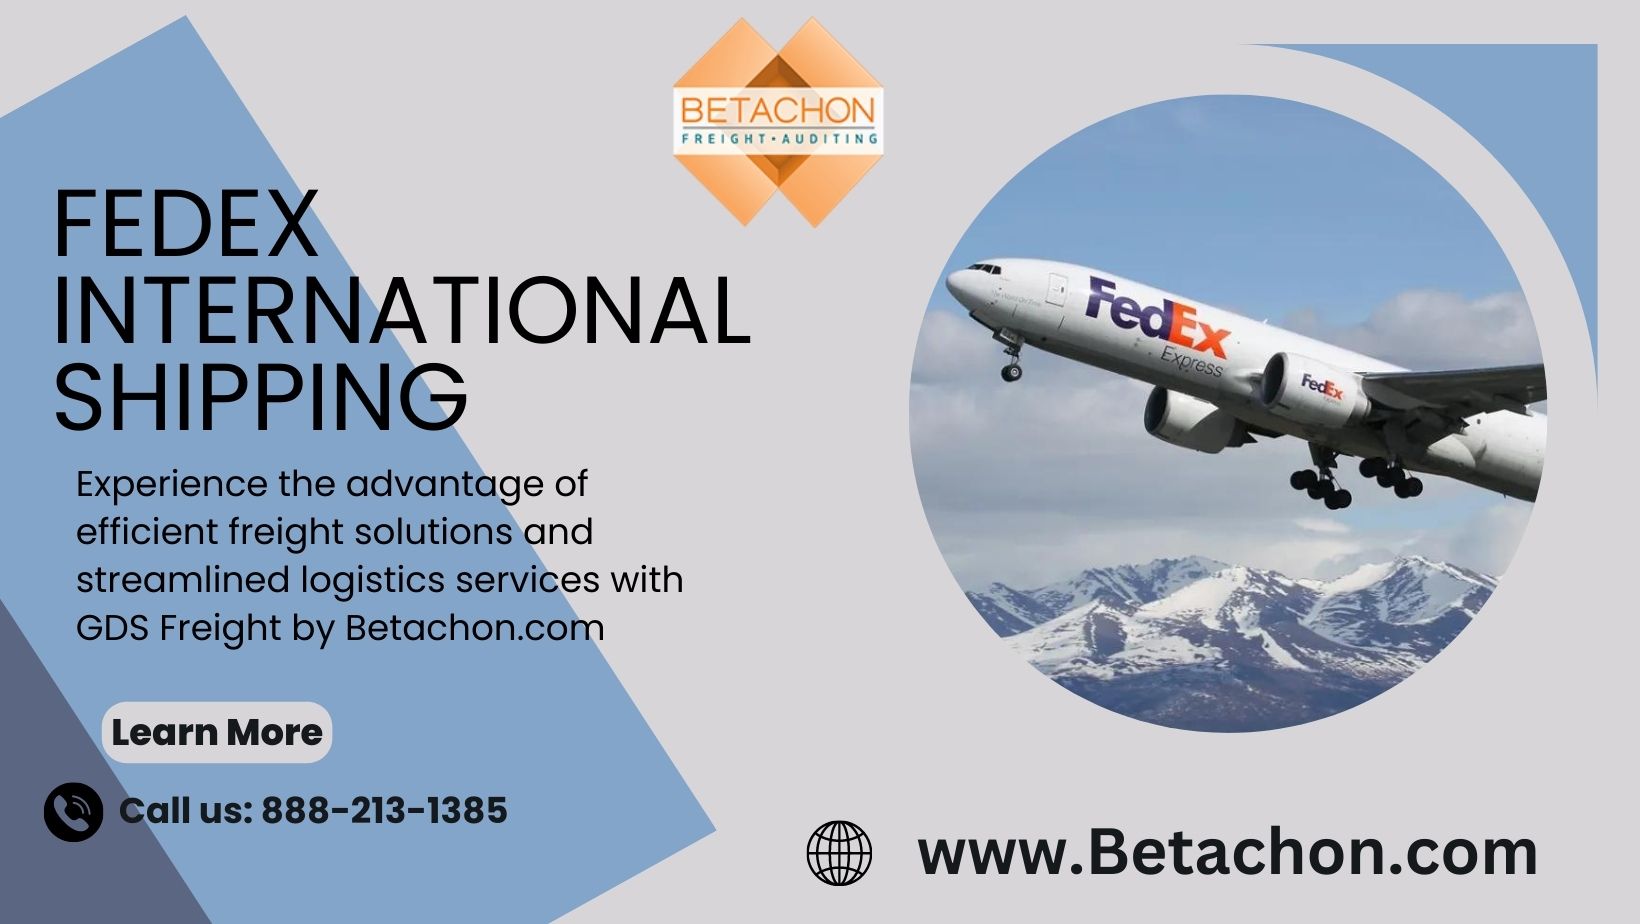 4. Fedex International Shipping